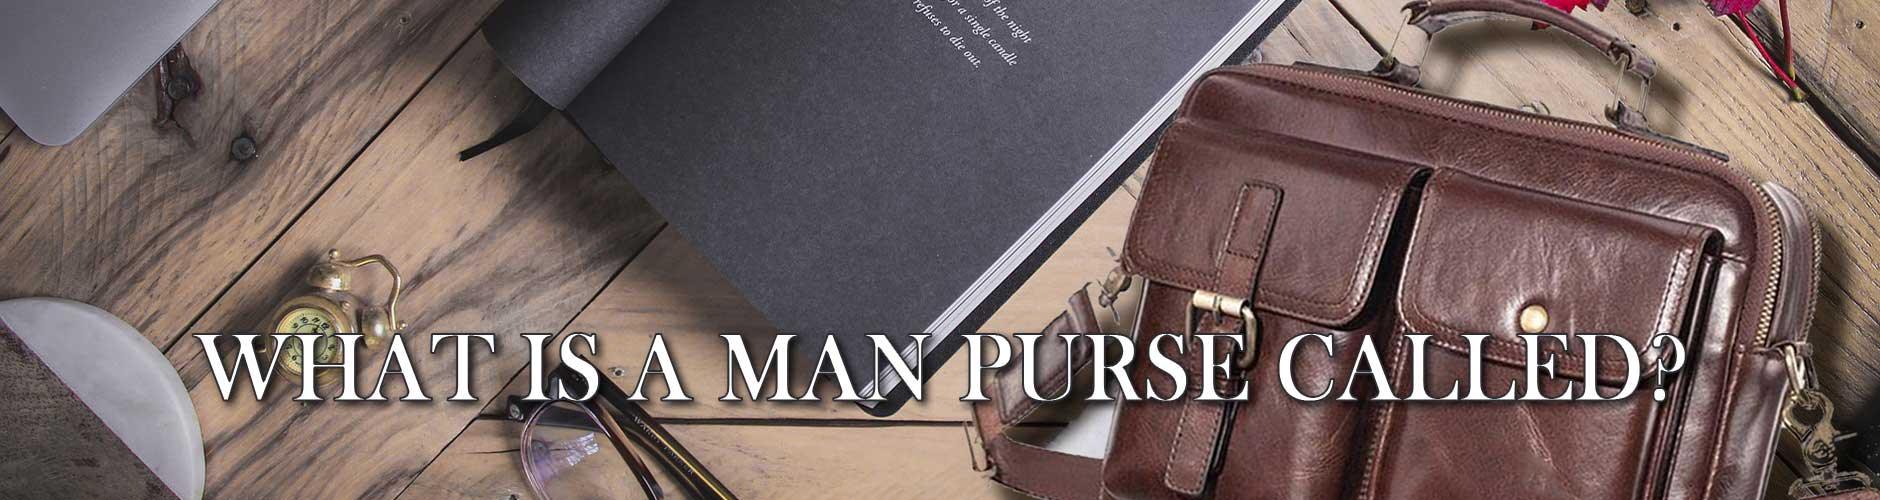 It's not a man purse. It's called a satchel. : r/ThriftStoreHauls